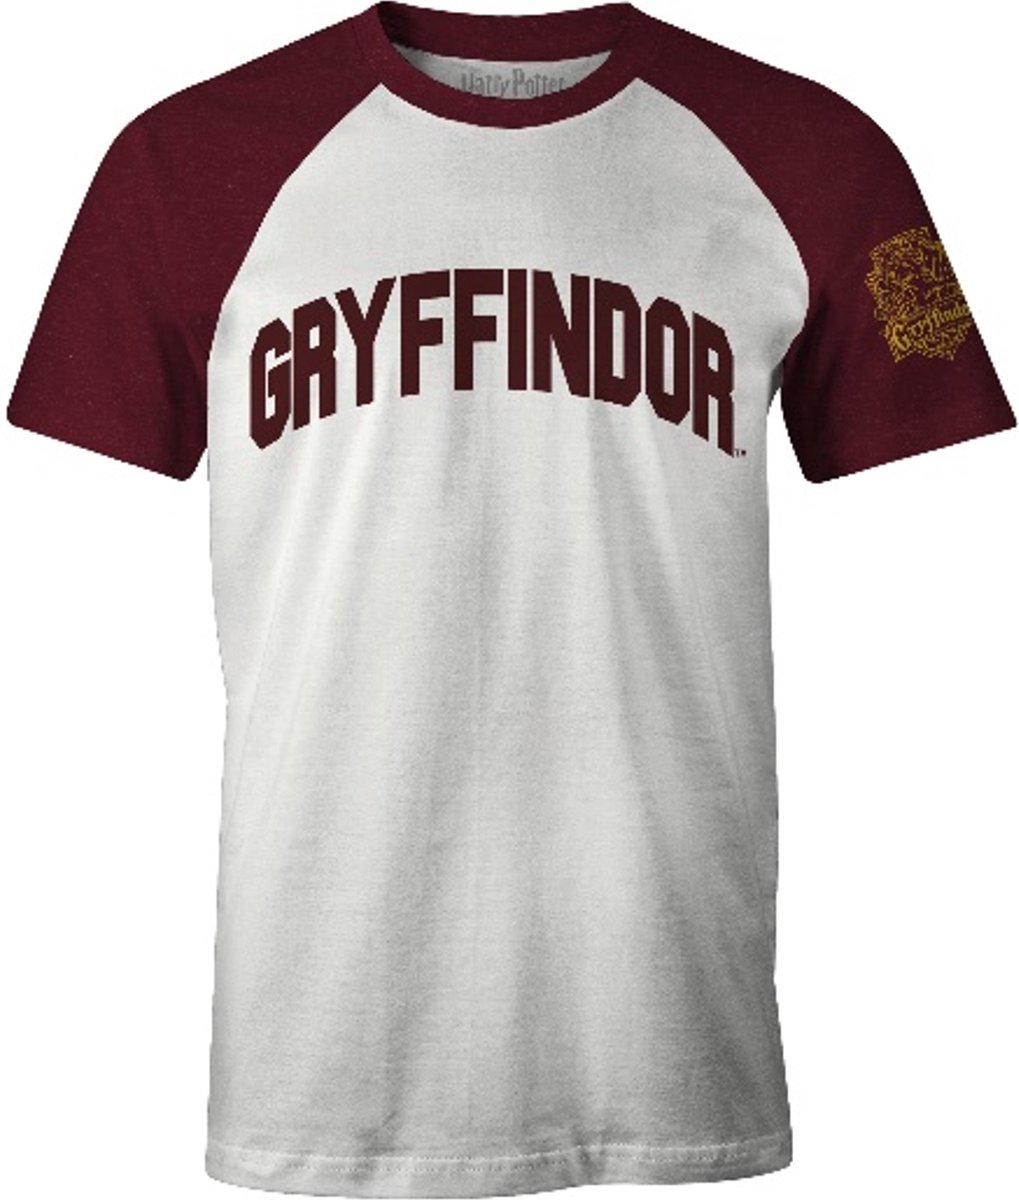 Harry Potter - Gryffindor - T-Shirt - Wit en Rood - S